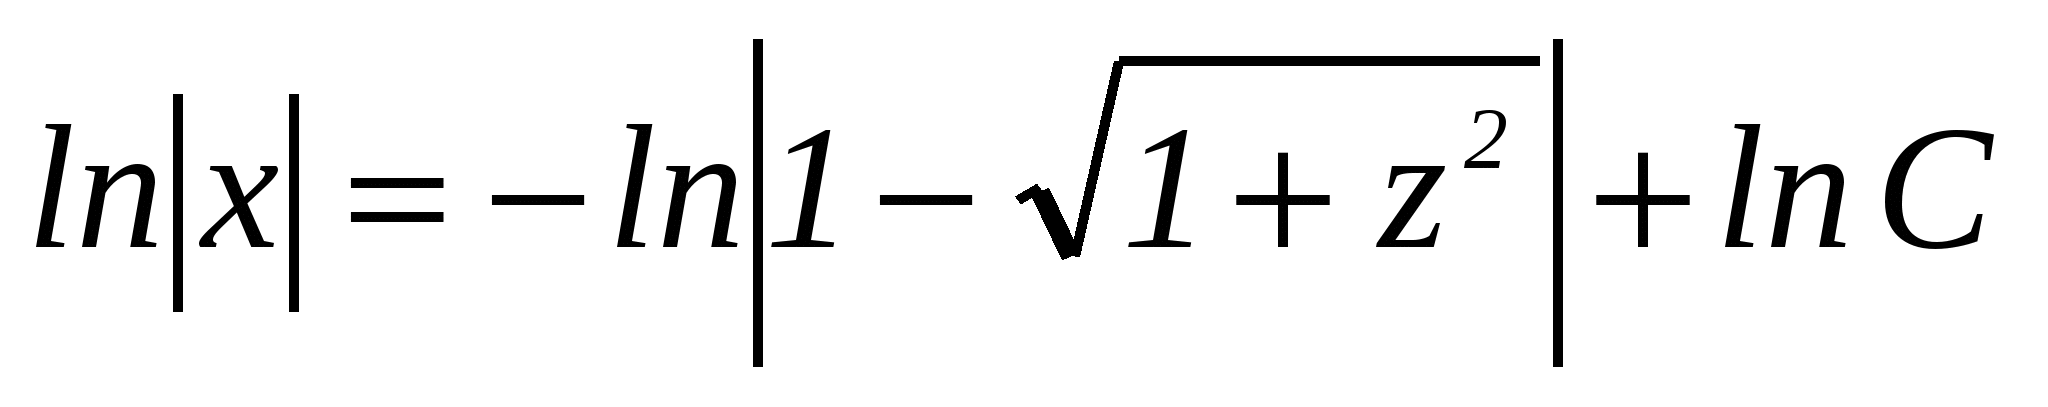 Занятие по математике (2 курс) Решение задач прикладного характера на составление дифференциальных уравнений